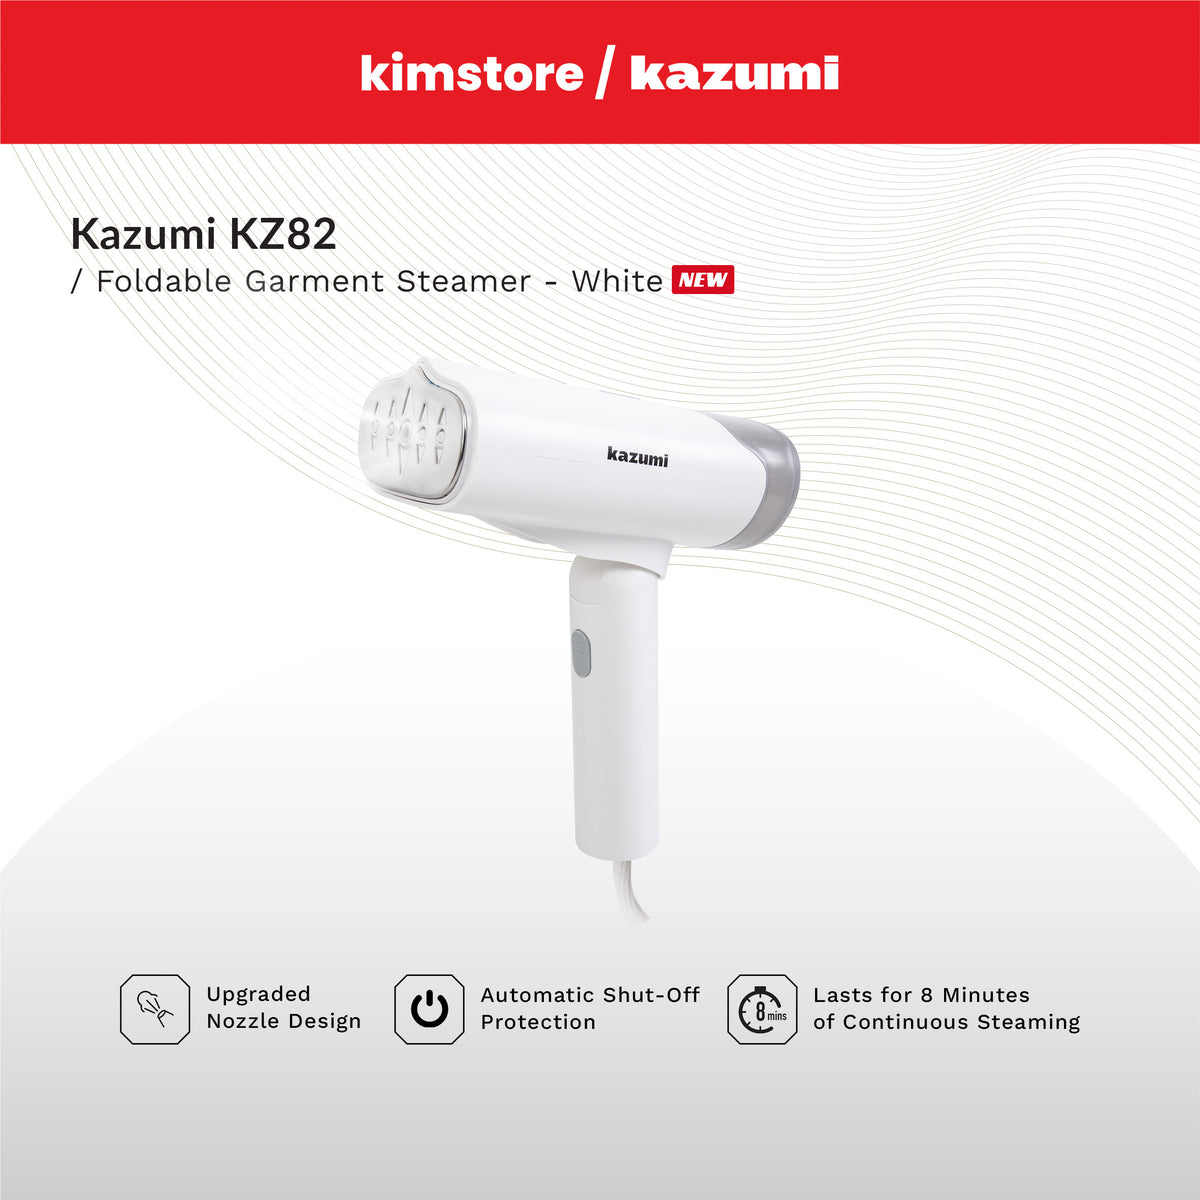 Kazumi KZ82 Foldable Garment Steamer